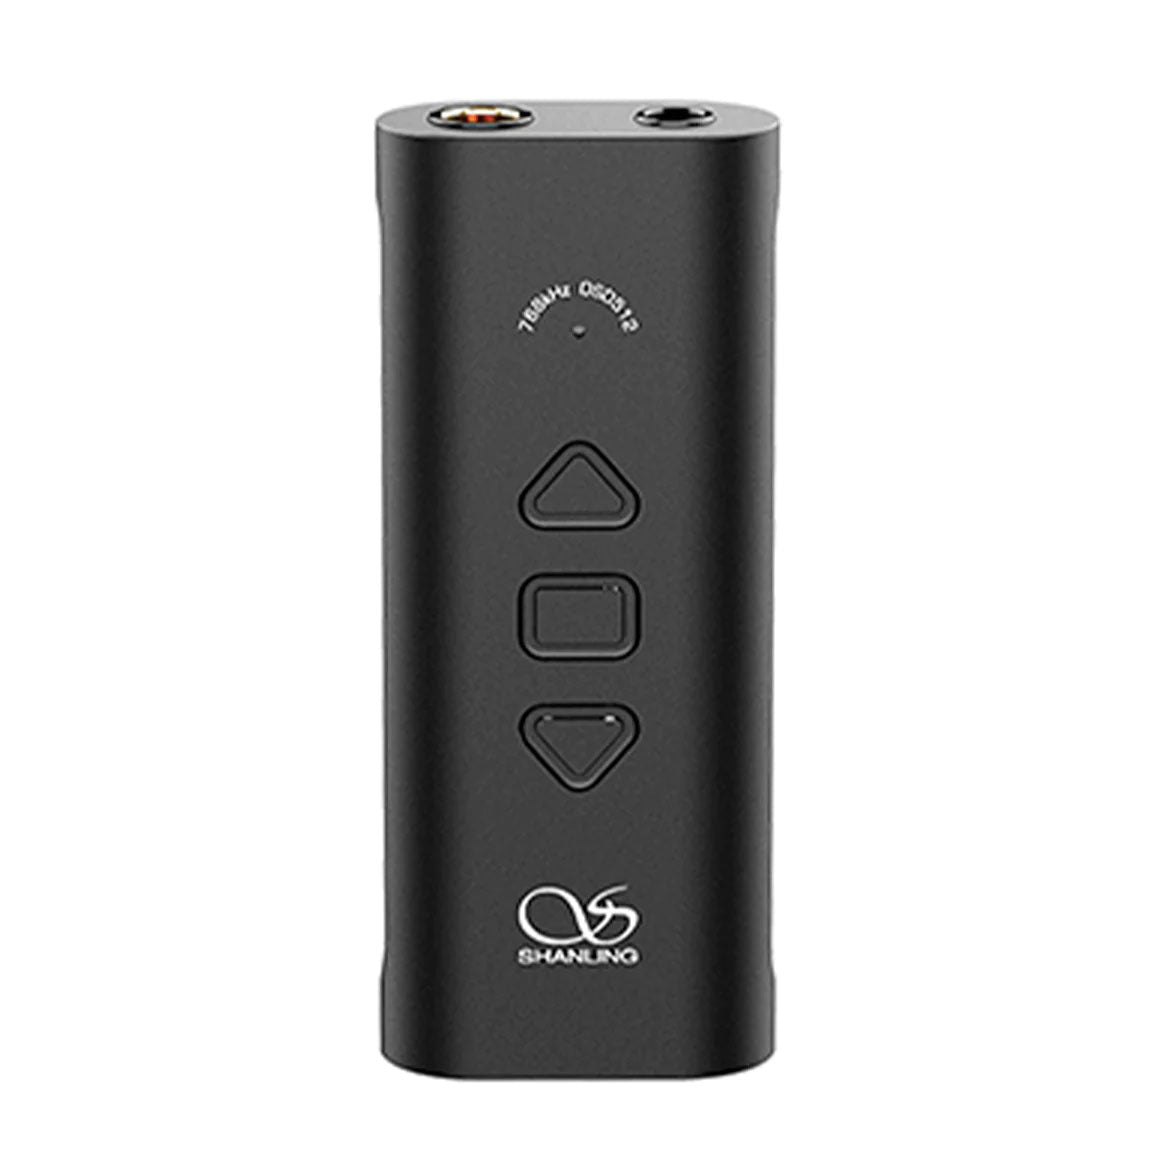 Shanling UA3 Portable USB Amp/DAC